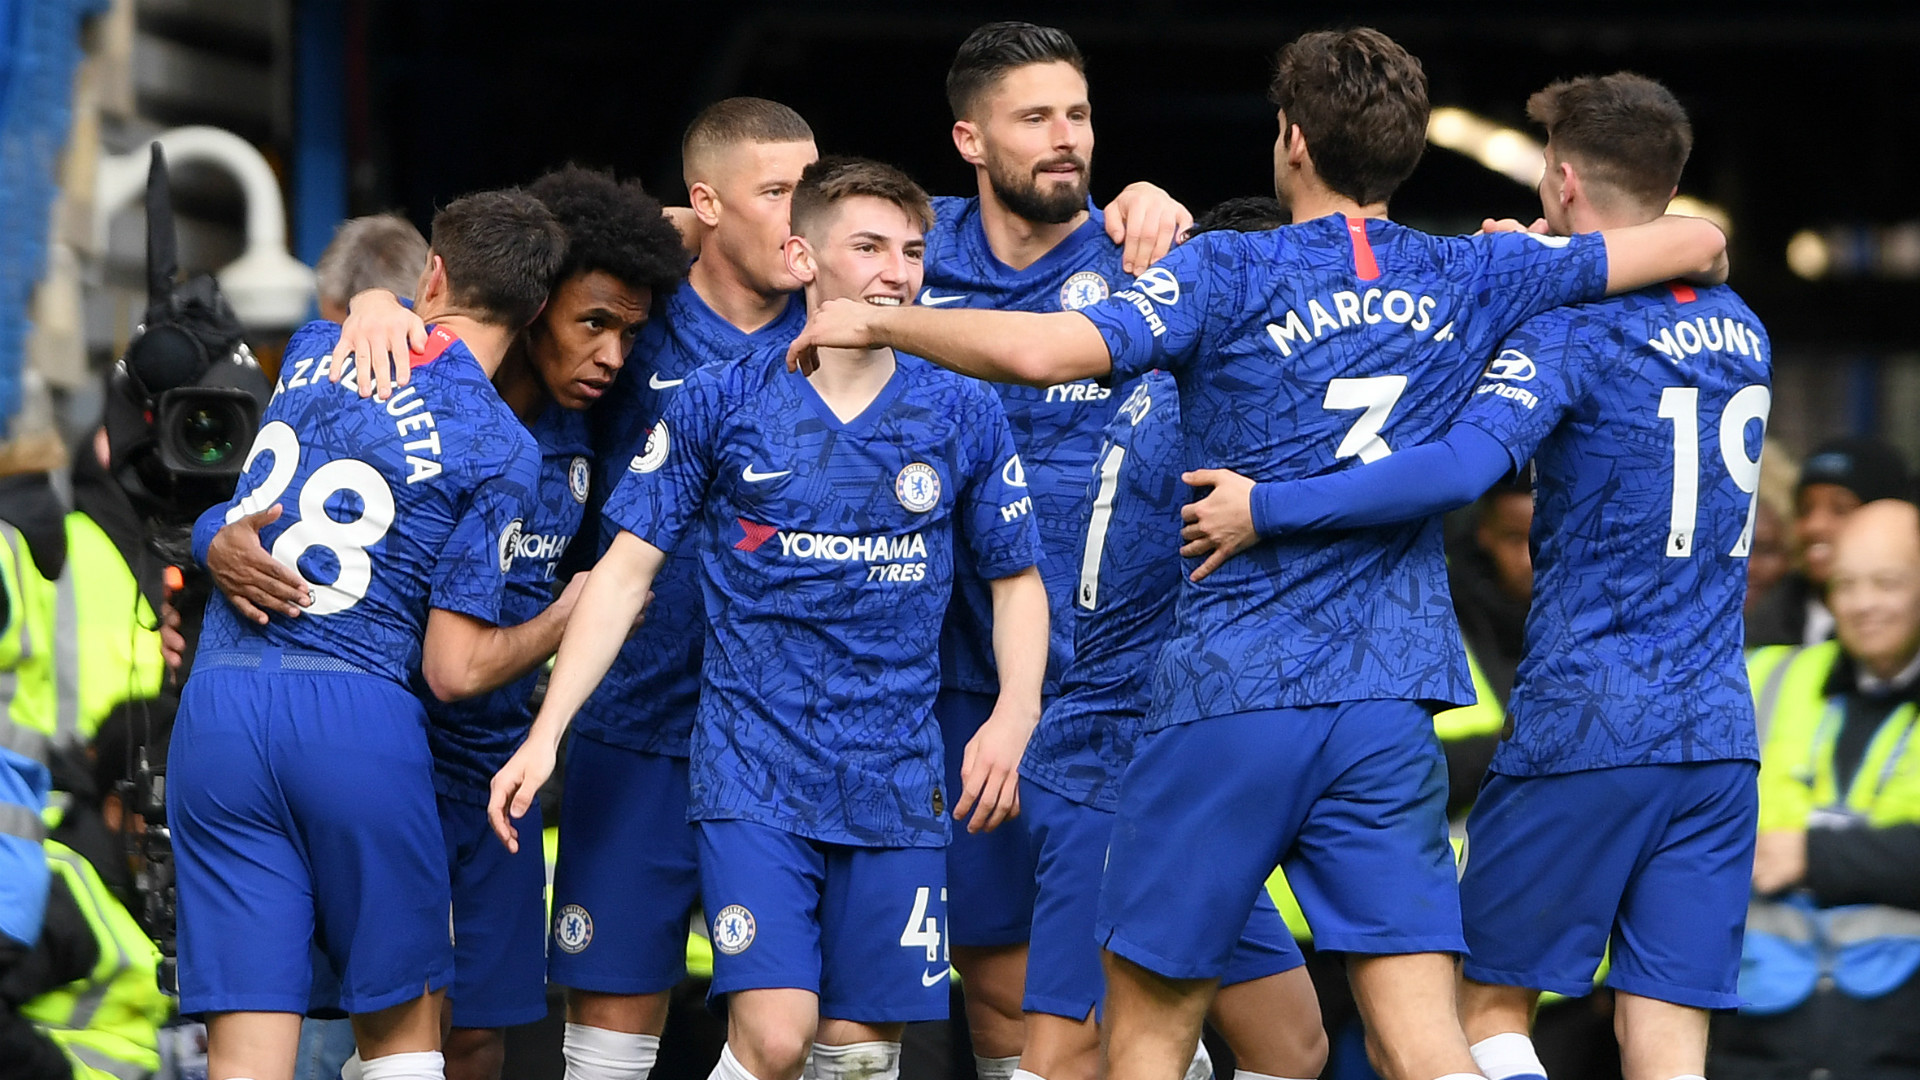 Chelsea-Everton (4-0) - Les Blues déroulent contre les Toffees